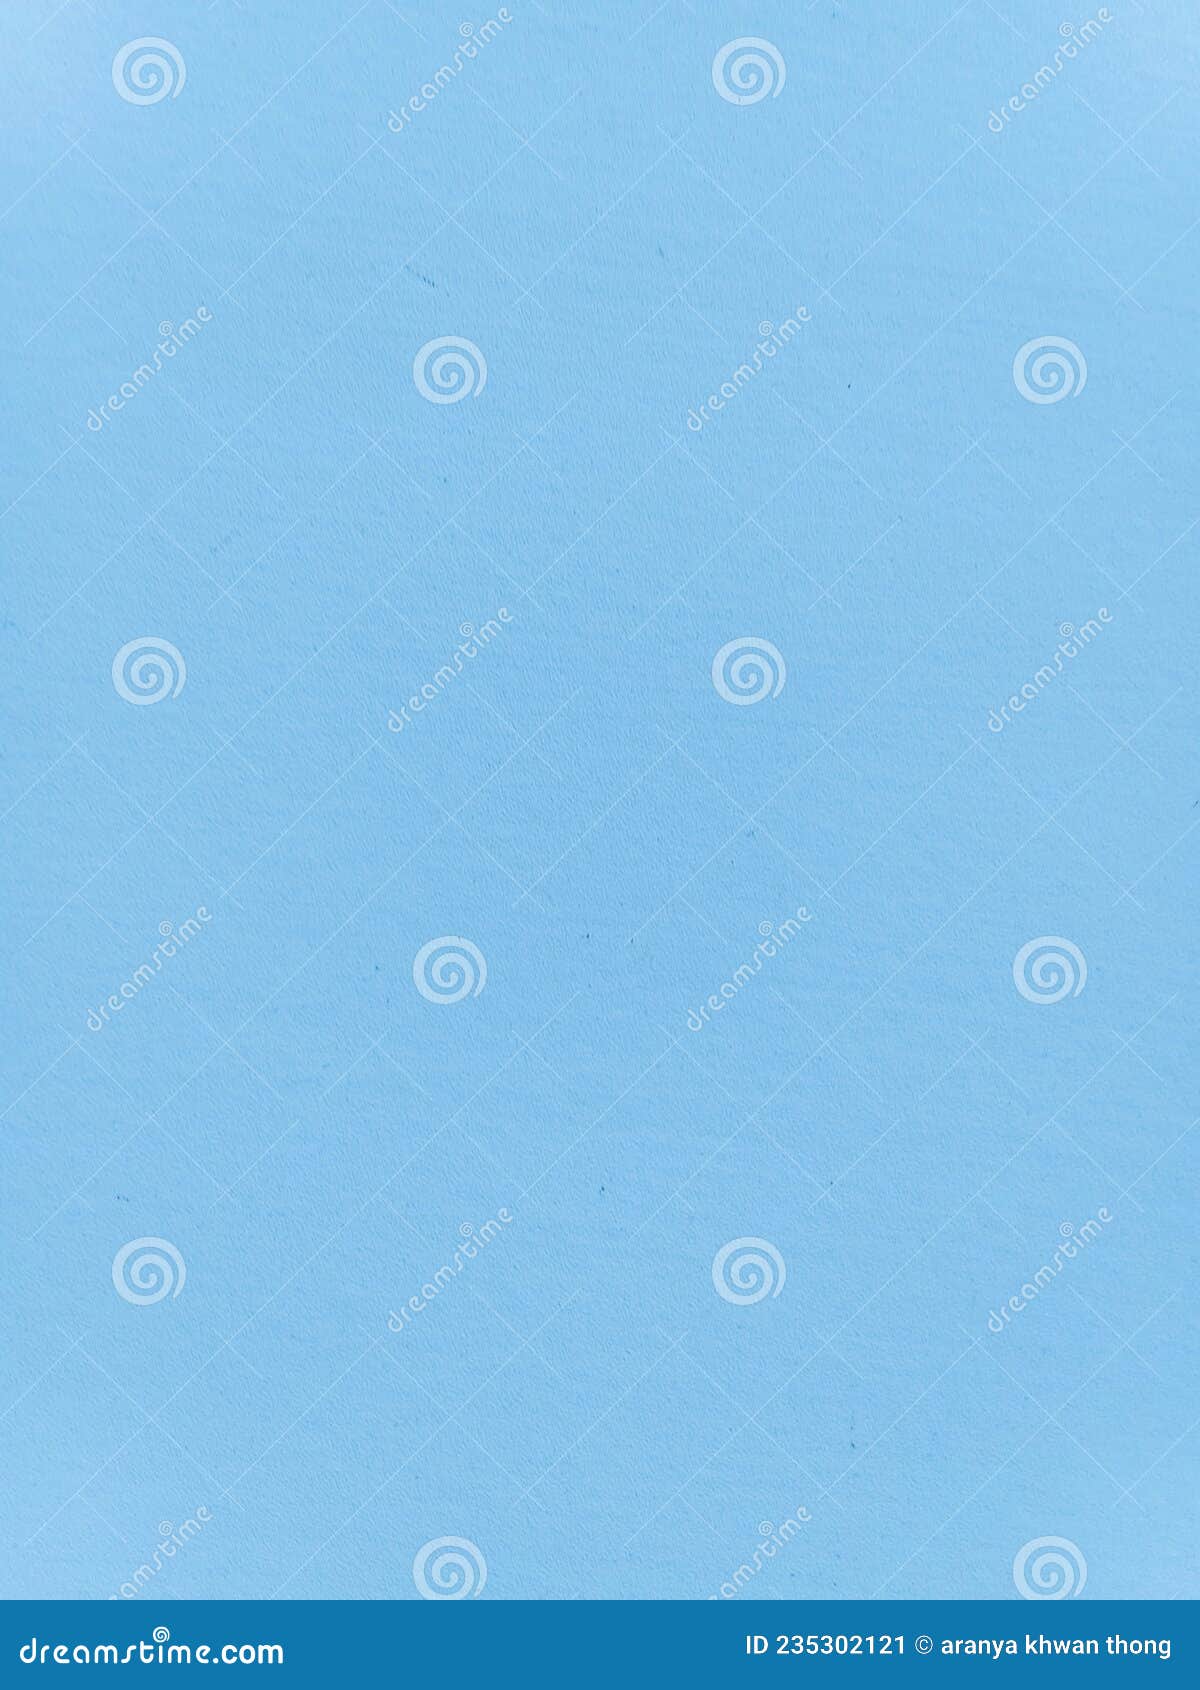 Cardboard, Wallpaper, Light Blue, Cardboard for Background Stock Image ...